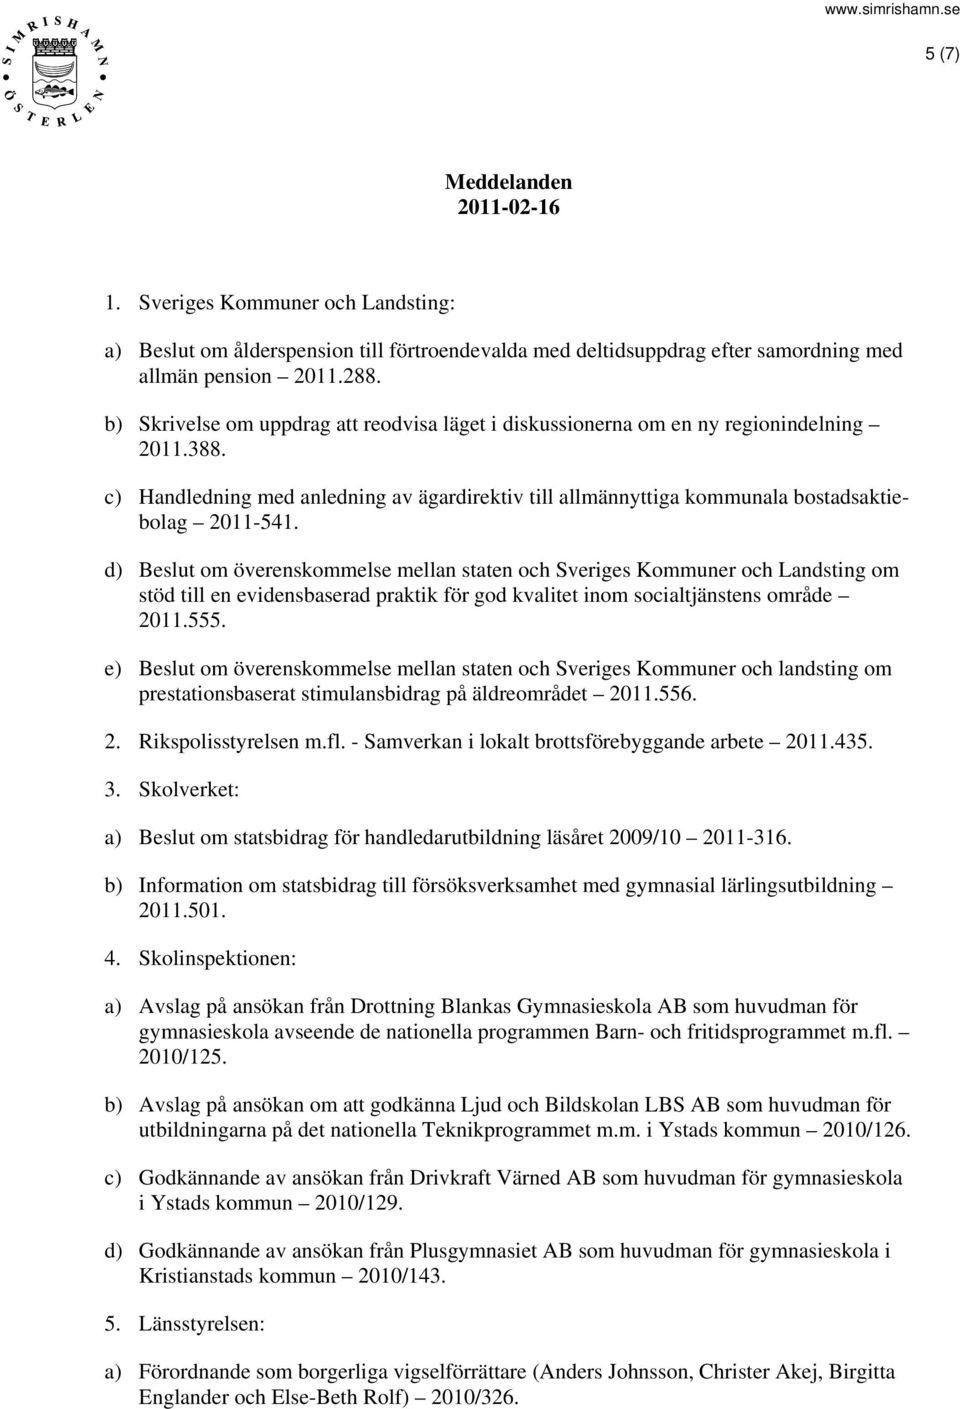 d) Beslut om överenskommelse mellan staten och Sveriges Kommuner och Landsting om stöd till en evidensbaserad praktik för god kvalitet inom socialtjänstens område 2011.555.